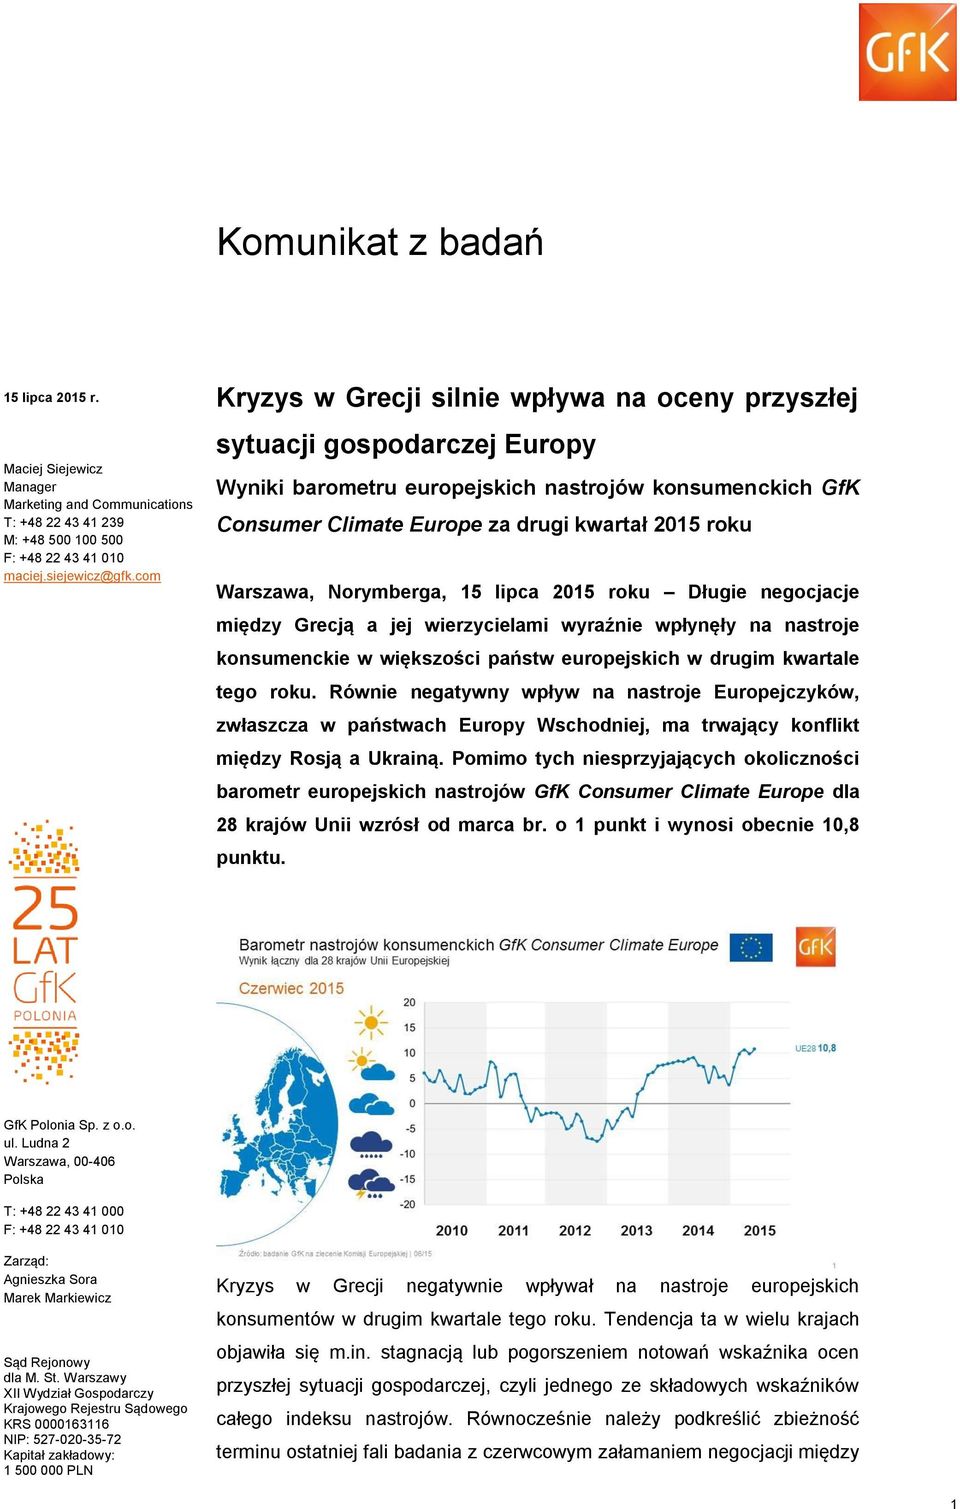 Warszawa, Norymberga, 15 lipca 2015 roku Długie negocjacje między Grecją a jej wierzycielami wyraźnie wpłynęły na nastroje konsumenckie w większości państw europejskich w drugim kwartale tego roku.